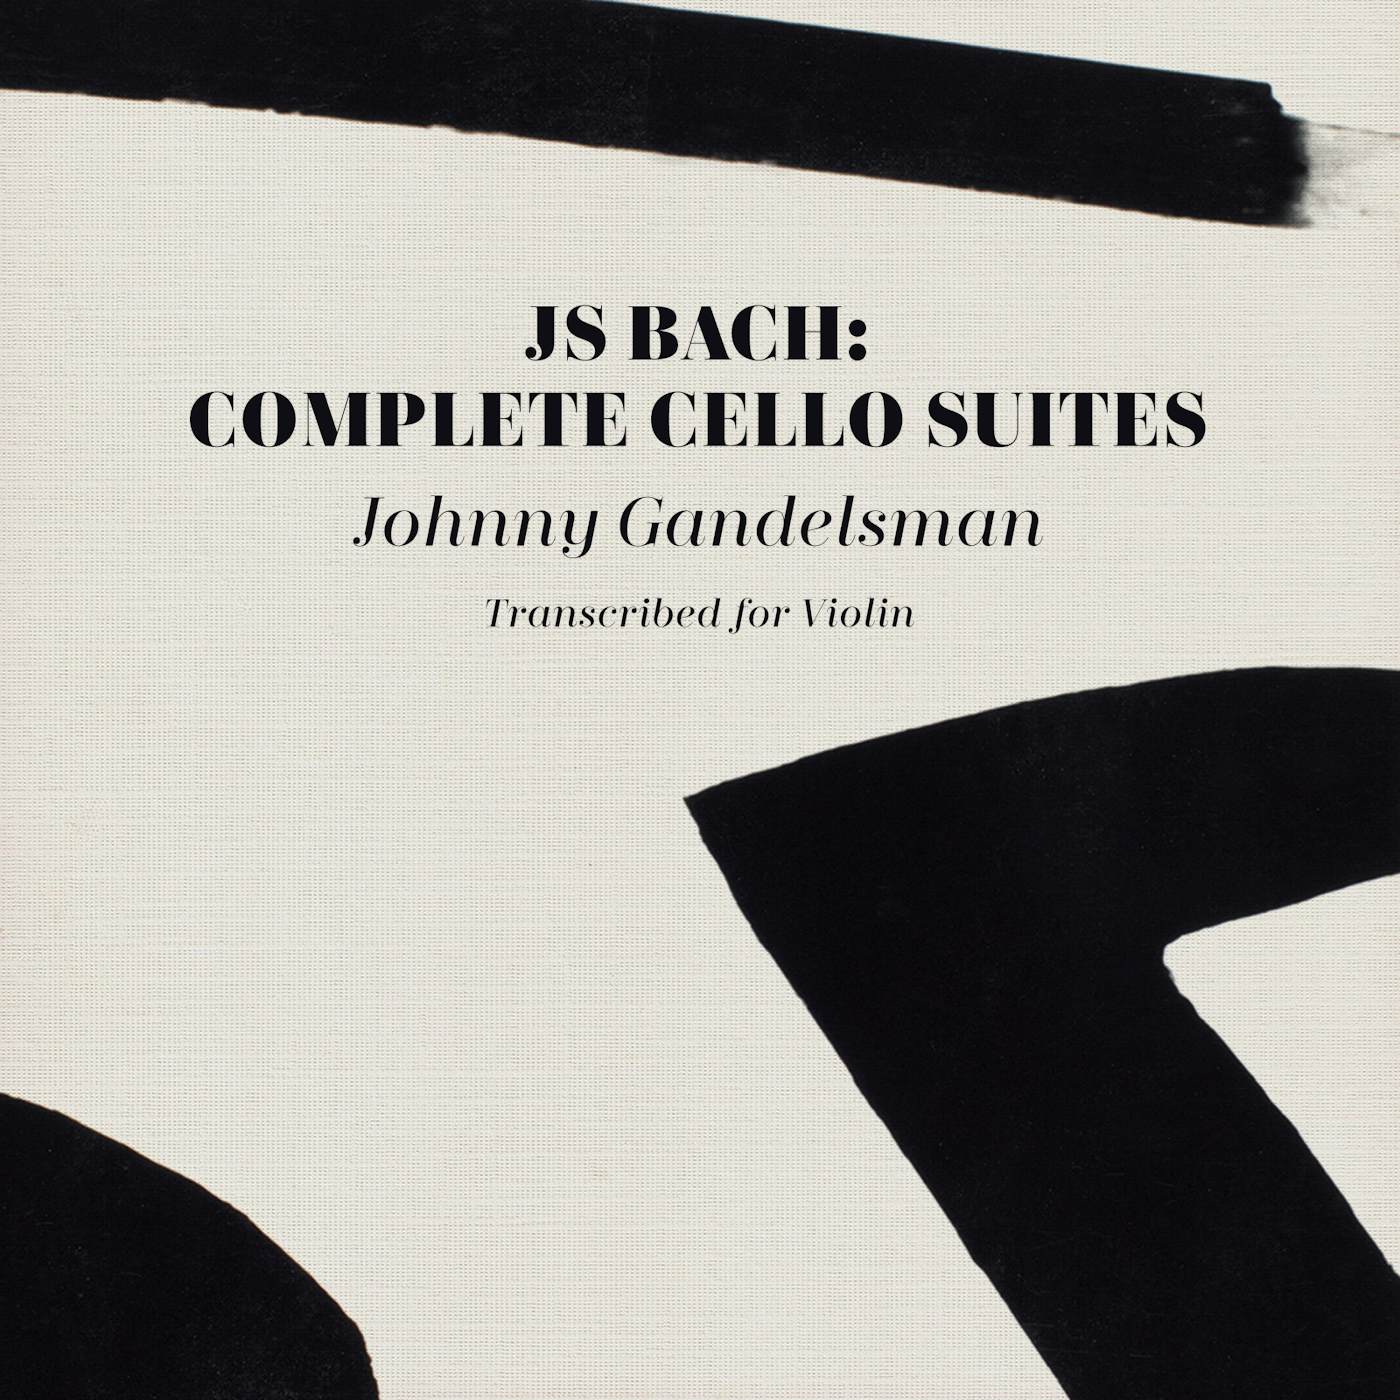 Johnny Gandelsman JS BACH: COMPLETE CELLO SUITES (TRANSCRIBED FOR VIOLIN) CD